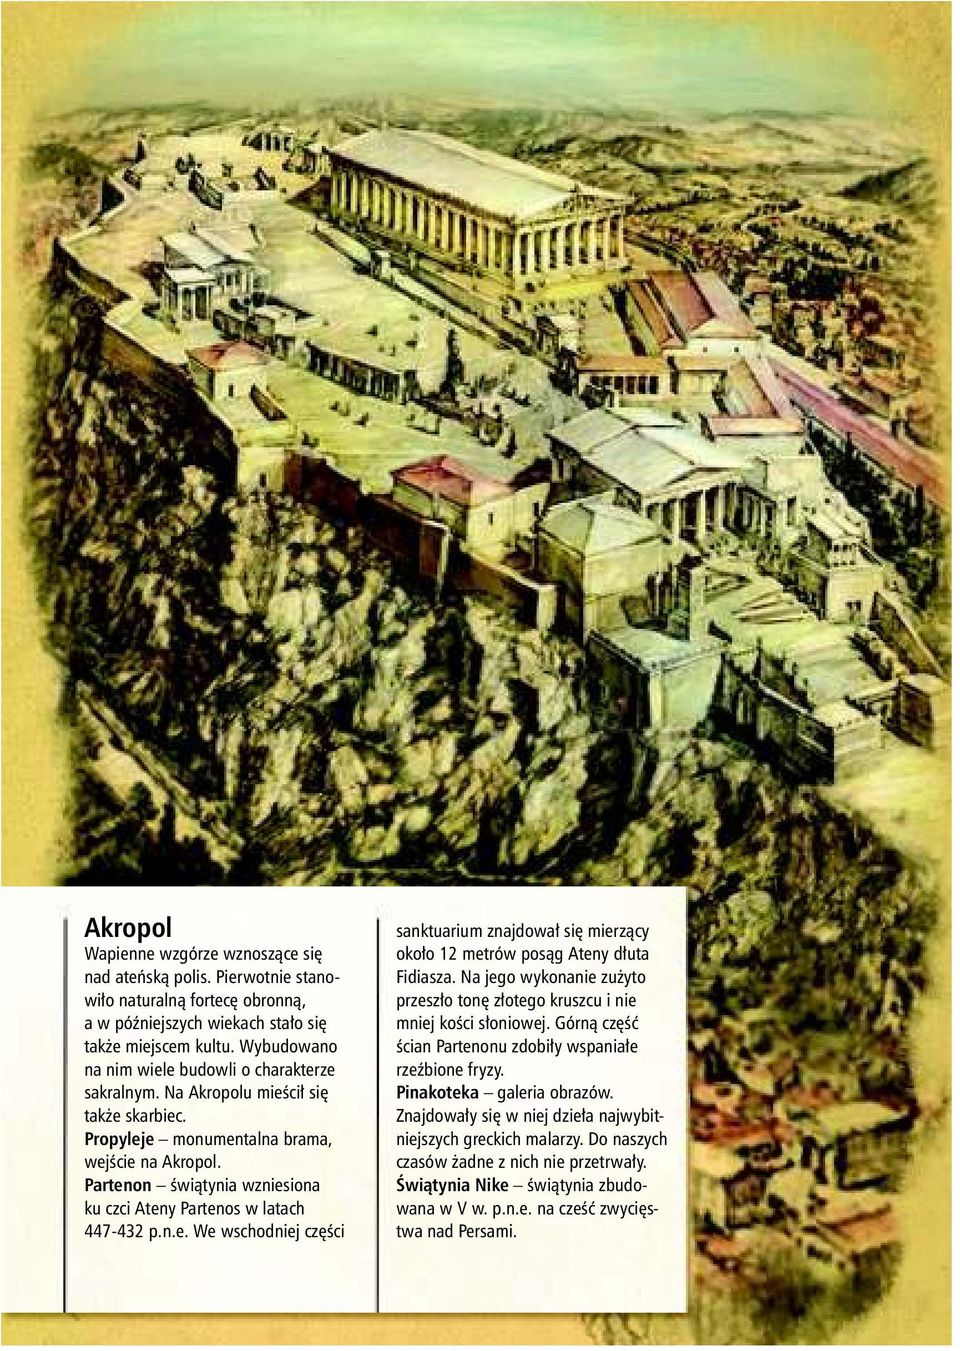 Partenon świątynia wzniesiona ku czci Ateny Partenos w latach 447-432 p.n.e. We wschodniej części sanktuarium znajdował się mierzący około 12 metrów posąg Ateny dłuta Fidiasza.